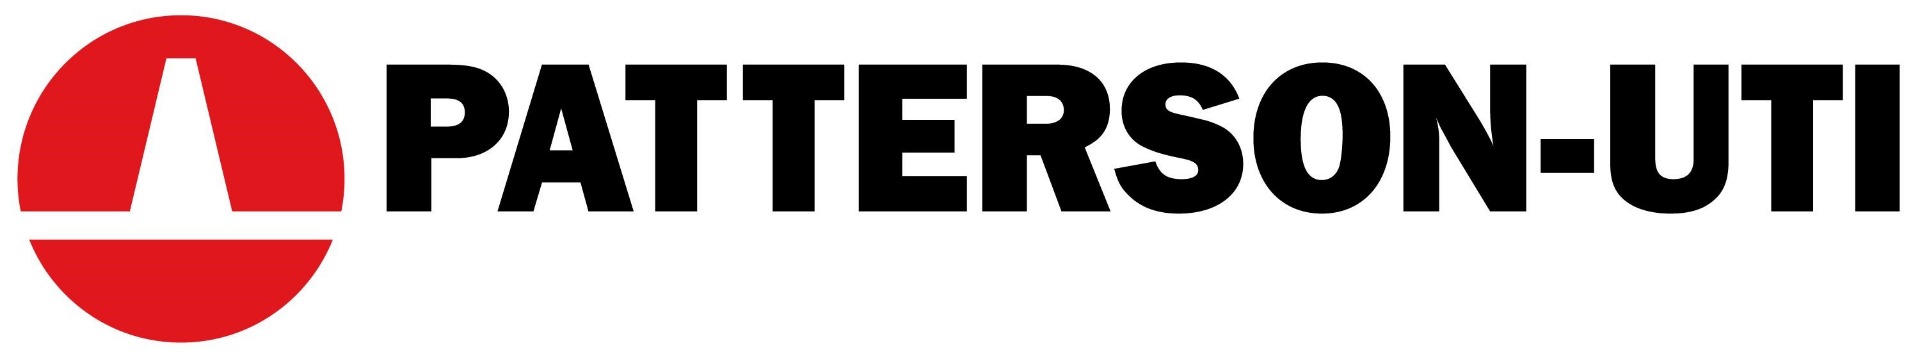 Patterson-UTI_-_logo